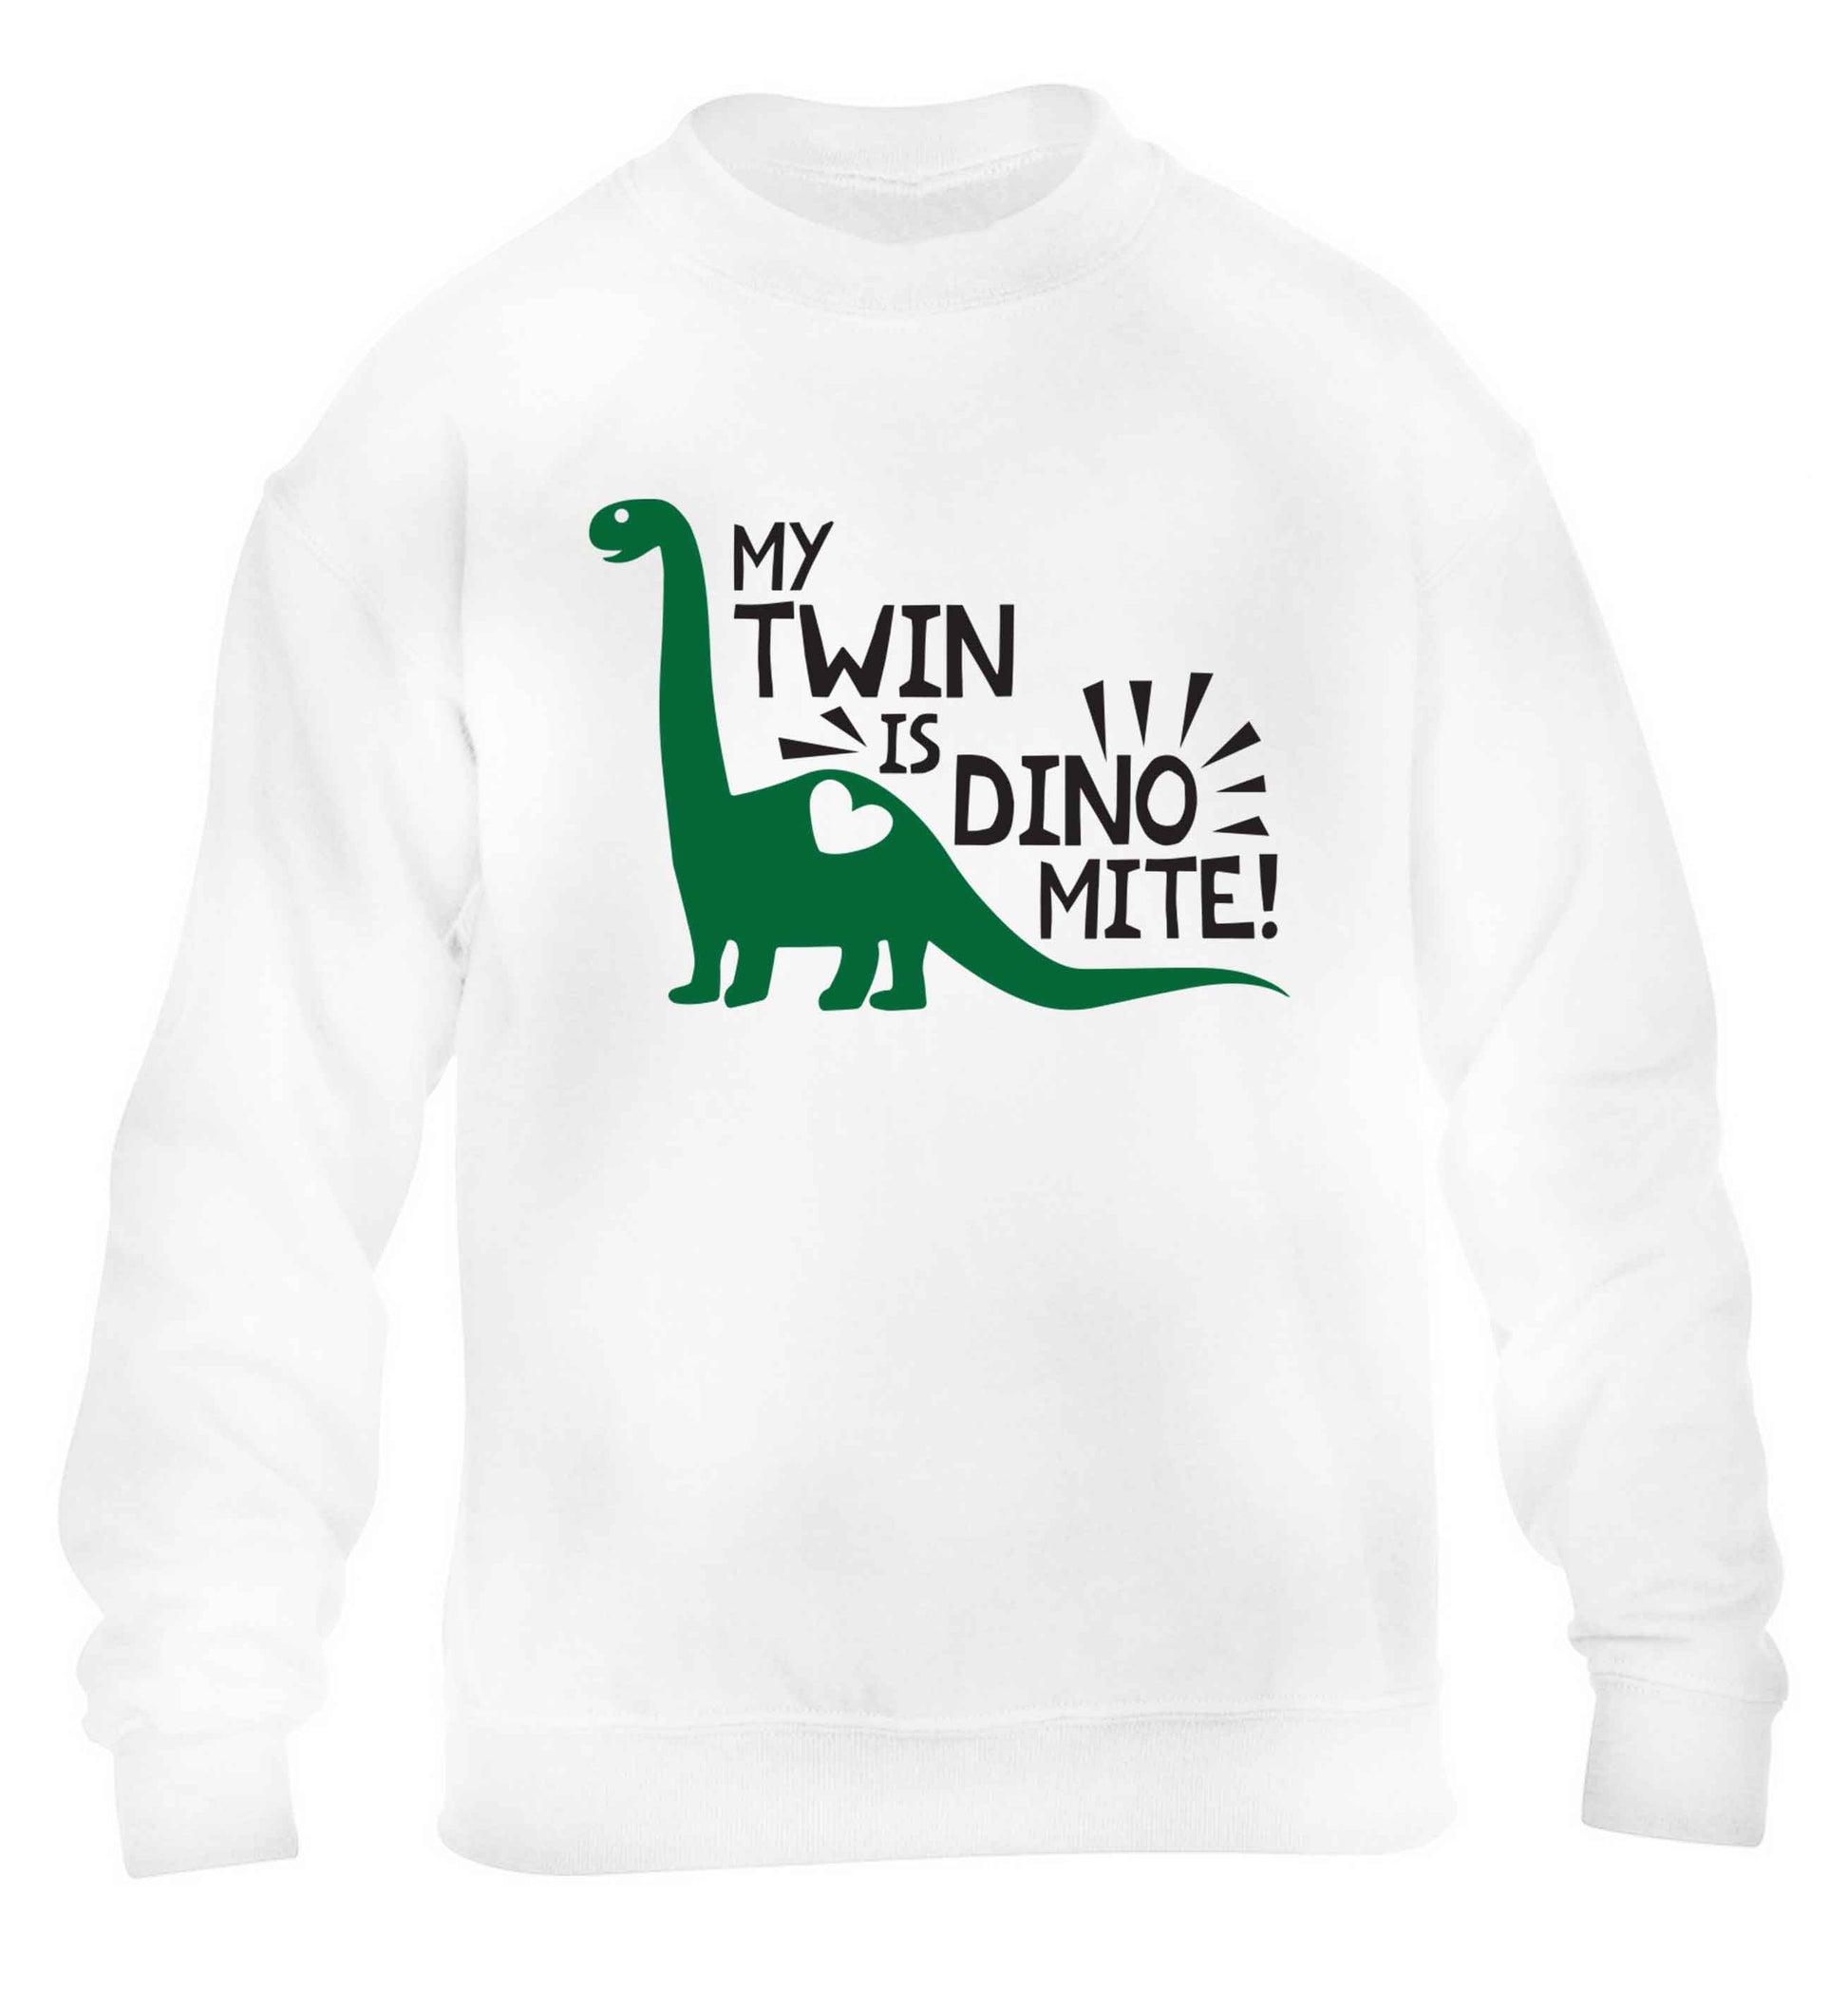 My twin is dinomite! children's white sweater 12-13 Years